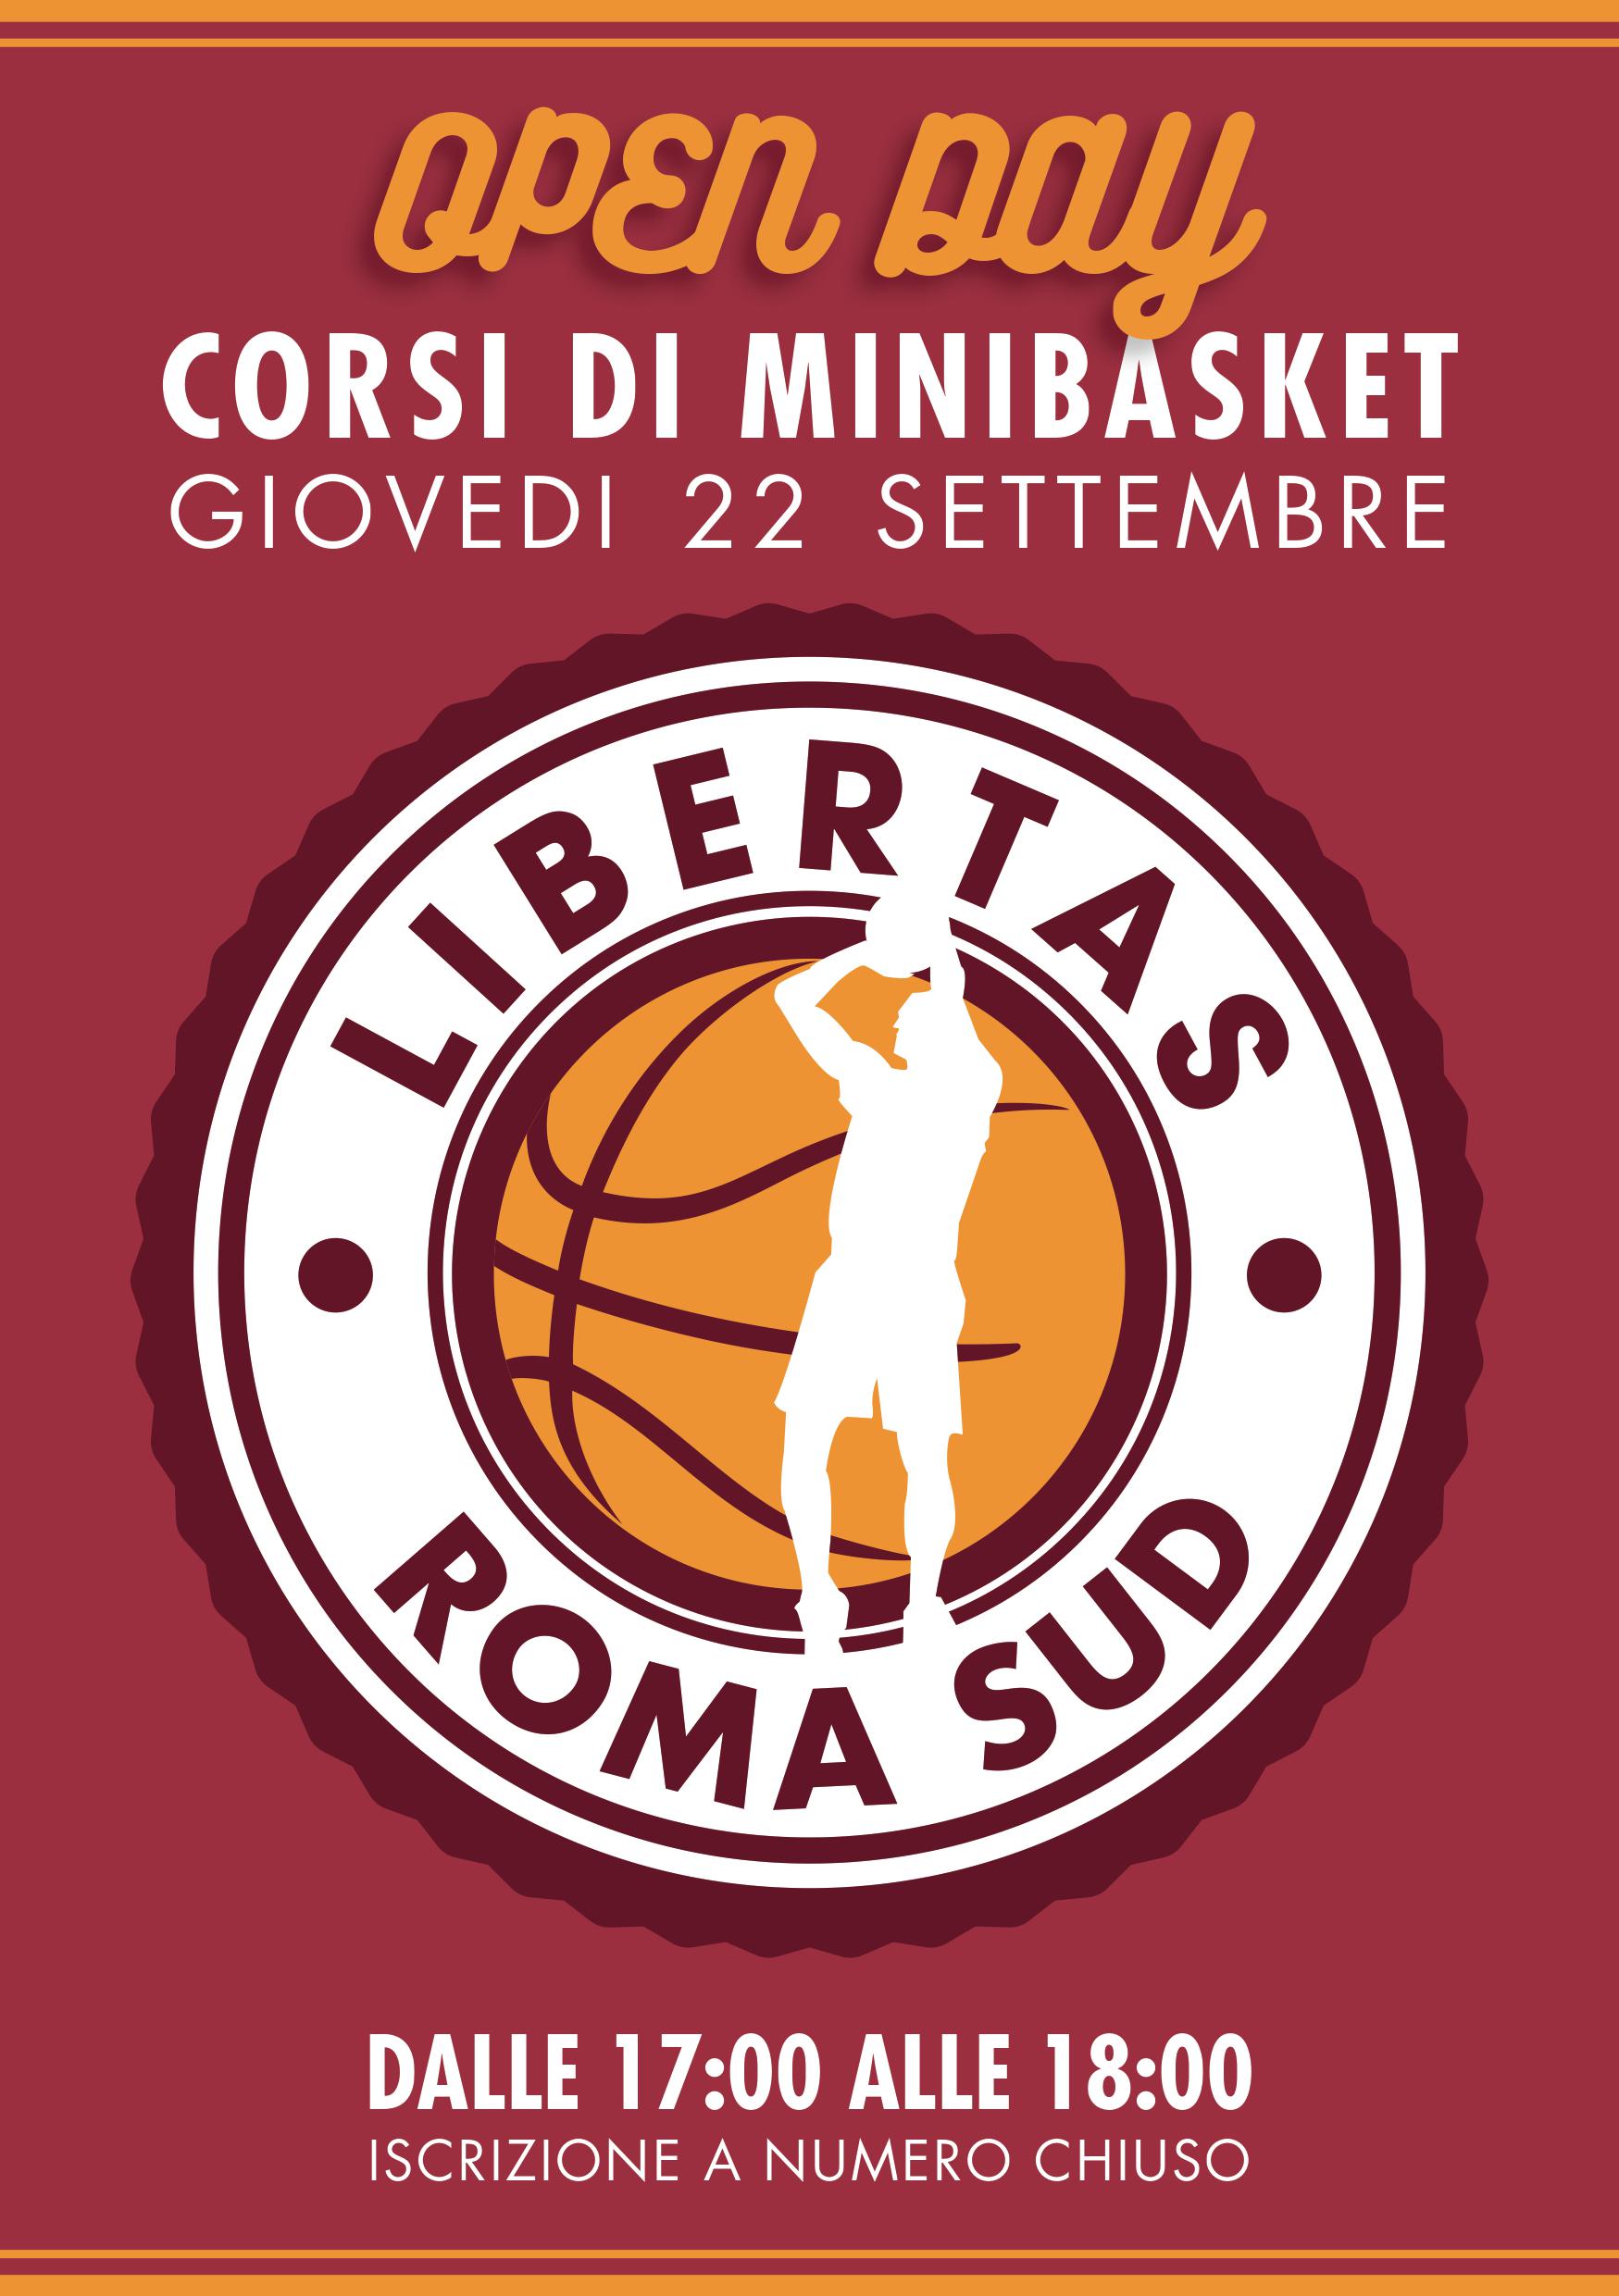 La Libertas Roma Sud vi invita all’Open Day di minibasket il 22 settembre!